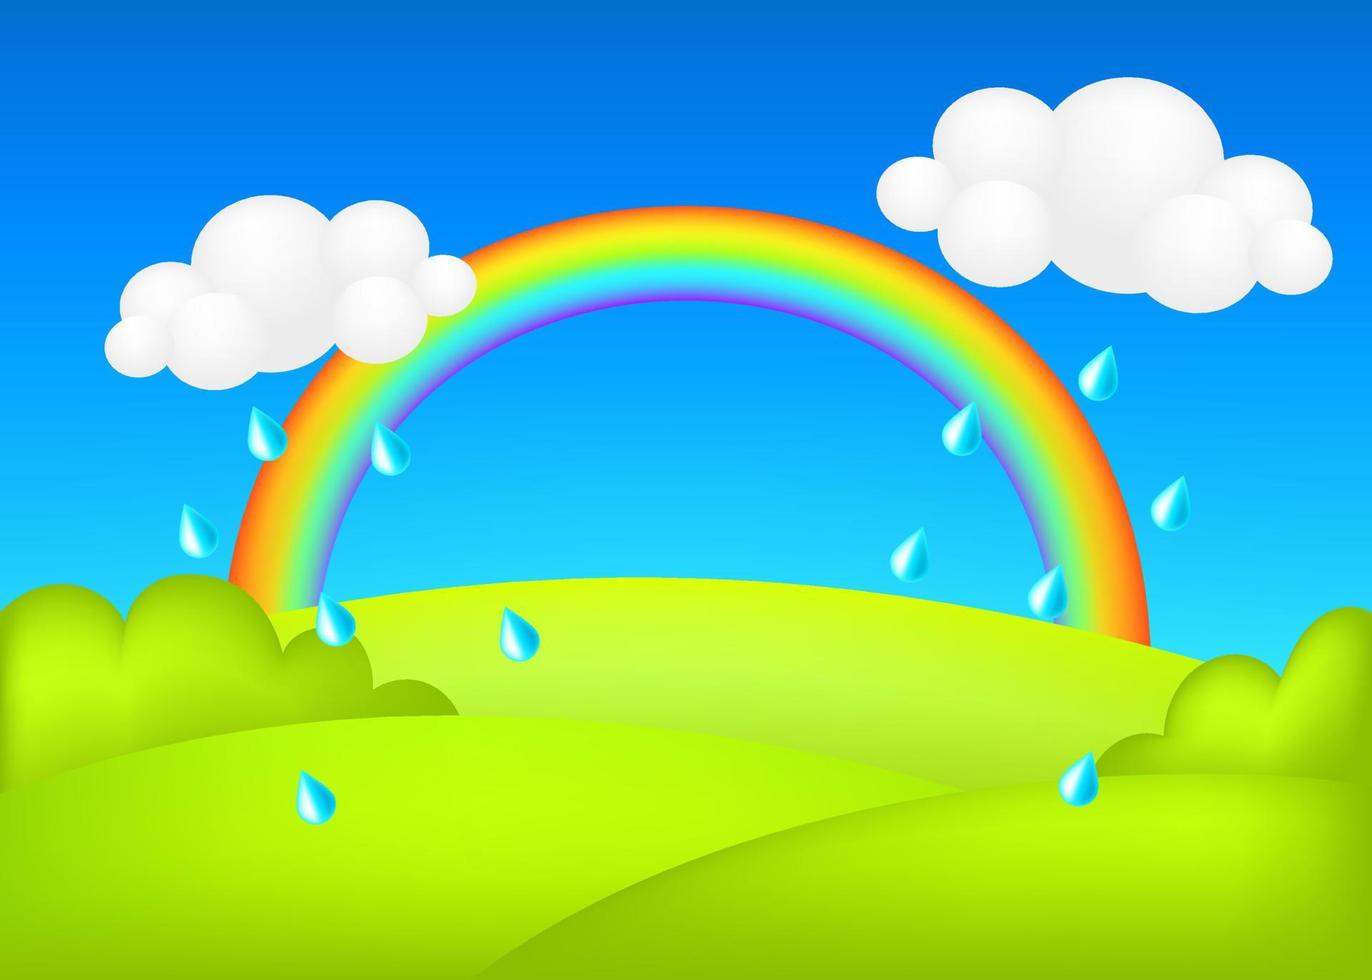 tempo chuvoso na ilustração vetorial 3d prado. paisagem com arco-íris no fundo da previsão de crianças do vale verde. cenário bonito colorido com gotas de chuva, pastagem verde primavera, céu azul para crianças. vetor